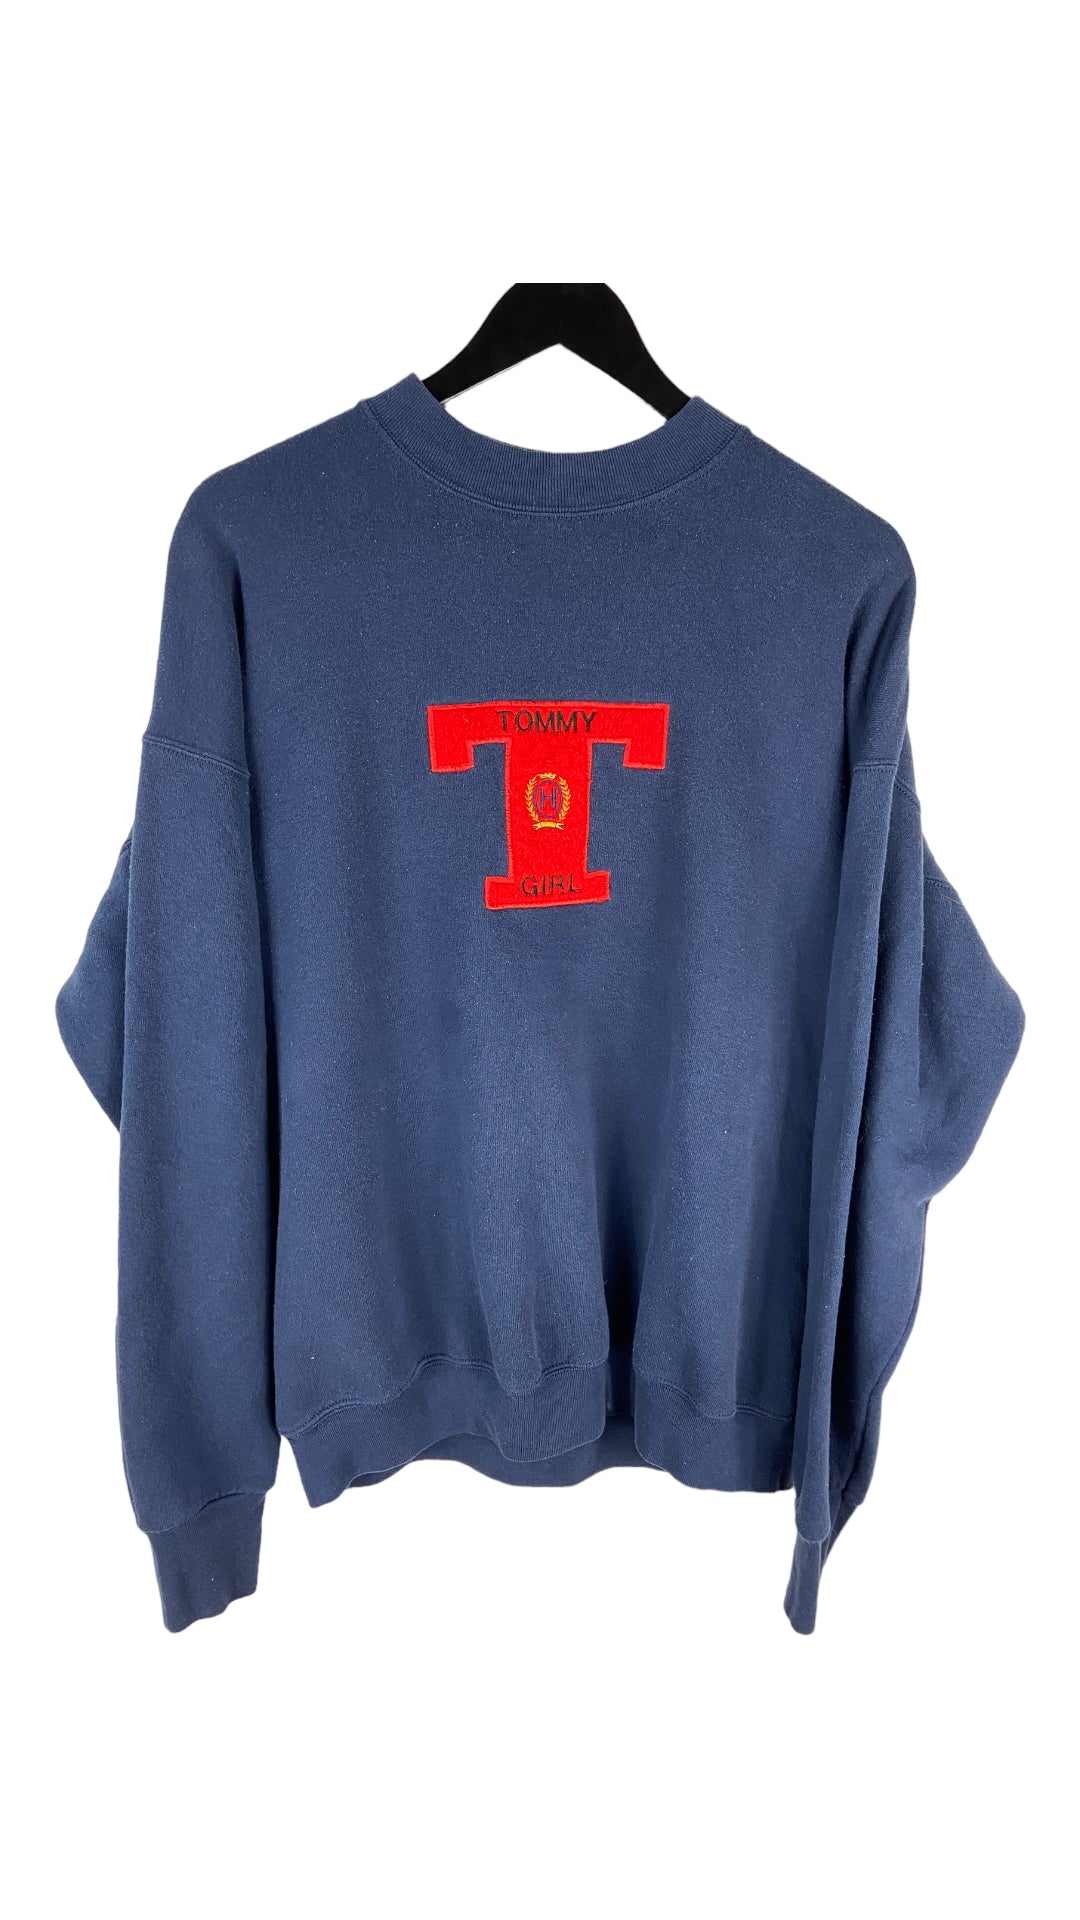 VTG Tommy Girl Boot Crewneck Sweater Sz XL